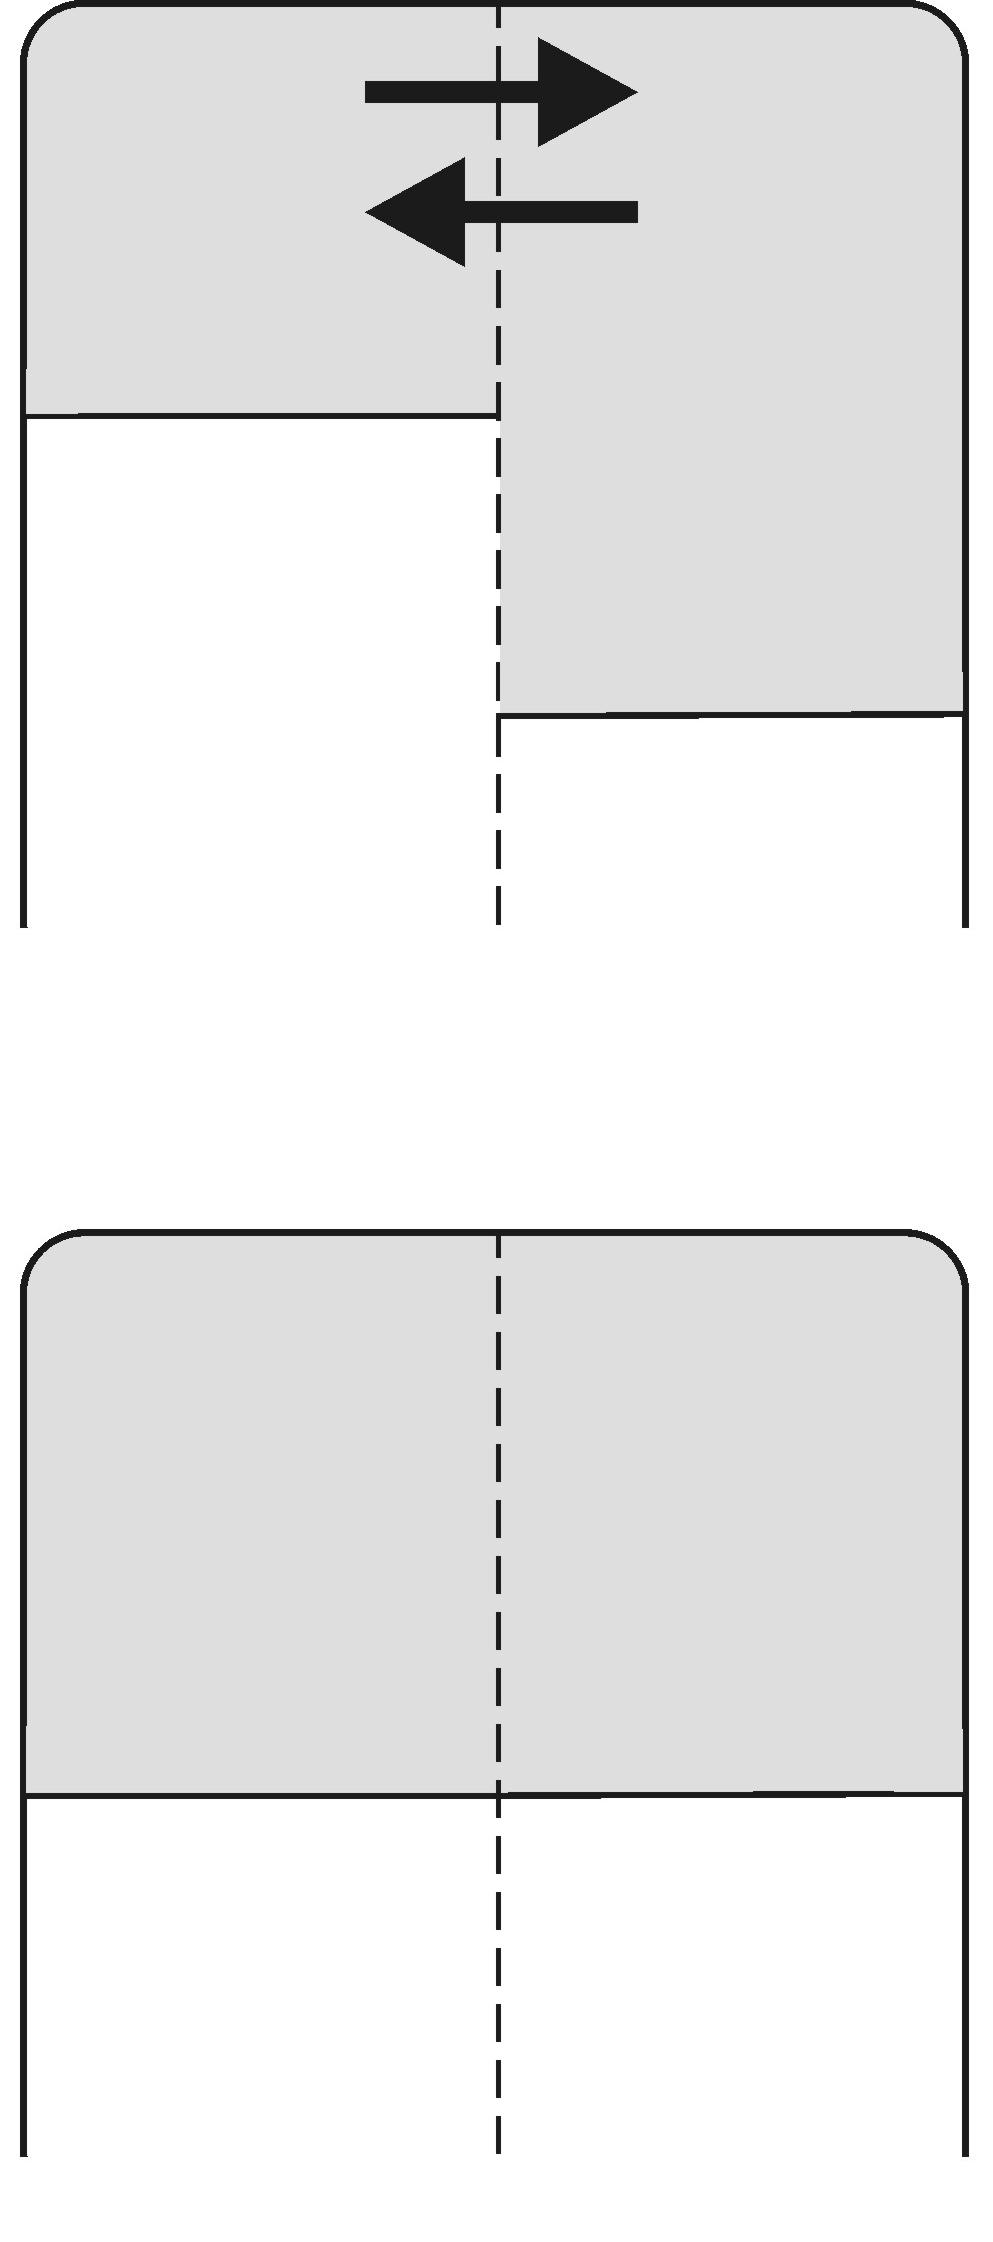 Nederlandse samenvatting wanneer twee compartimenten met enerzijds een waterige oplossing van een membraanimpermeabele stof (compartiment II) en anderzijds puur water (compartiment I) worden